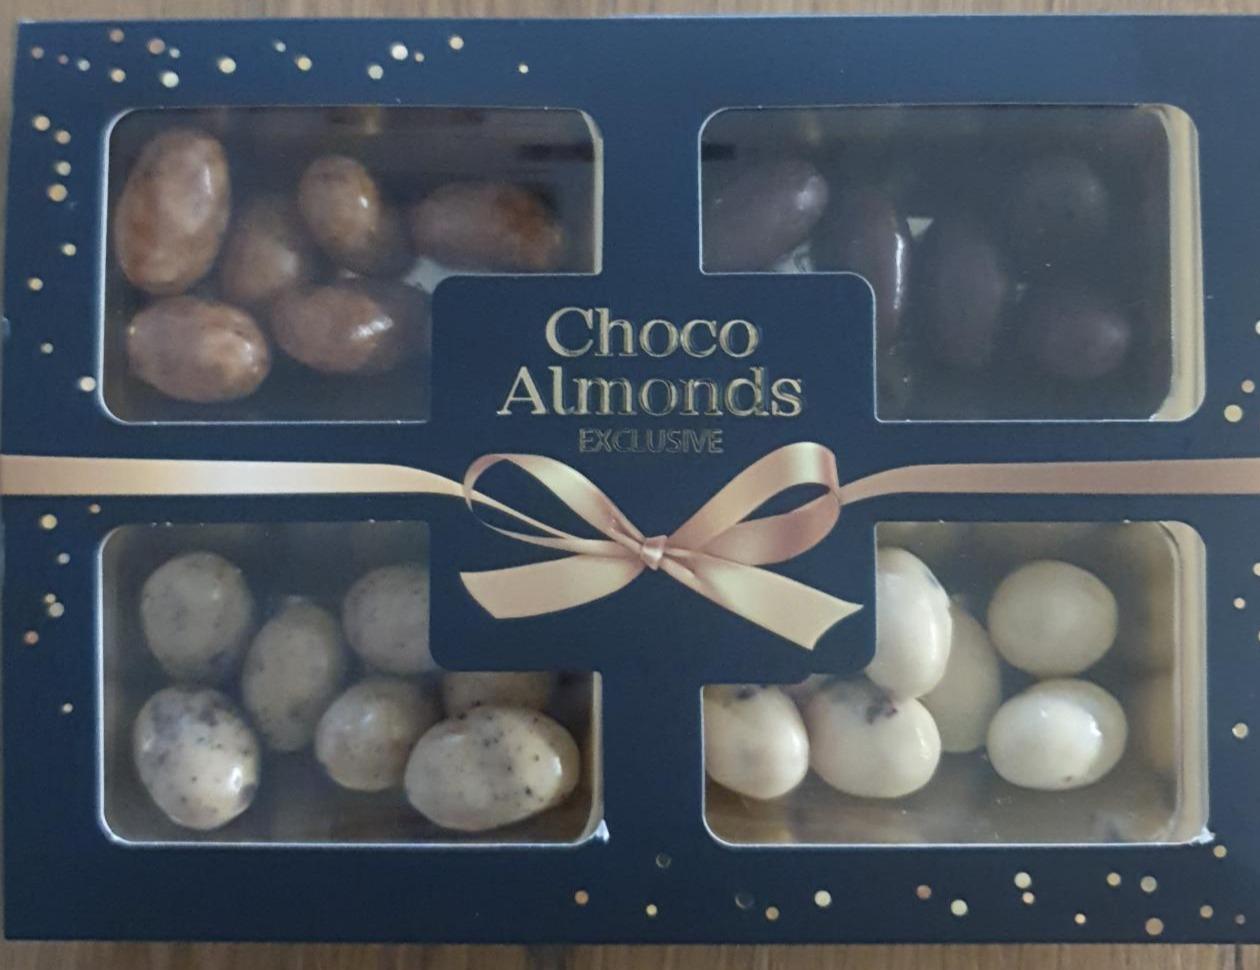 Fotografie - Choco almonds exclusive Coop Premium